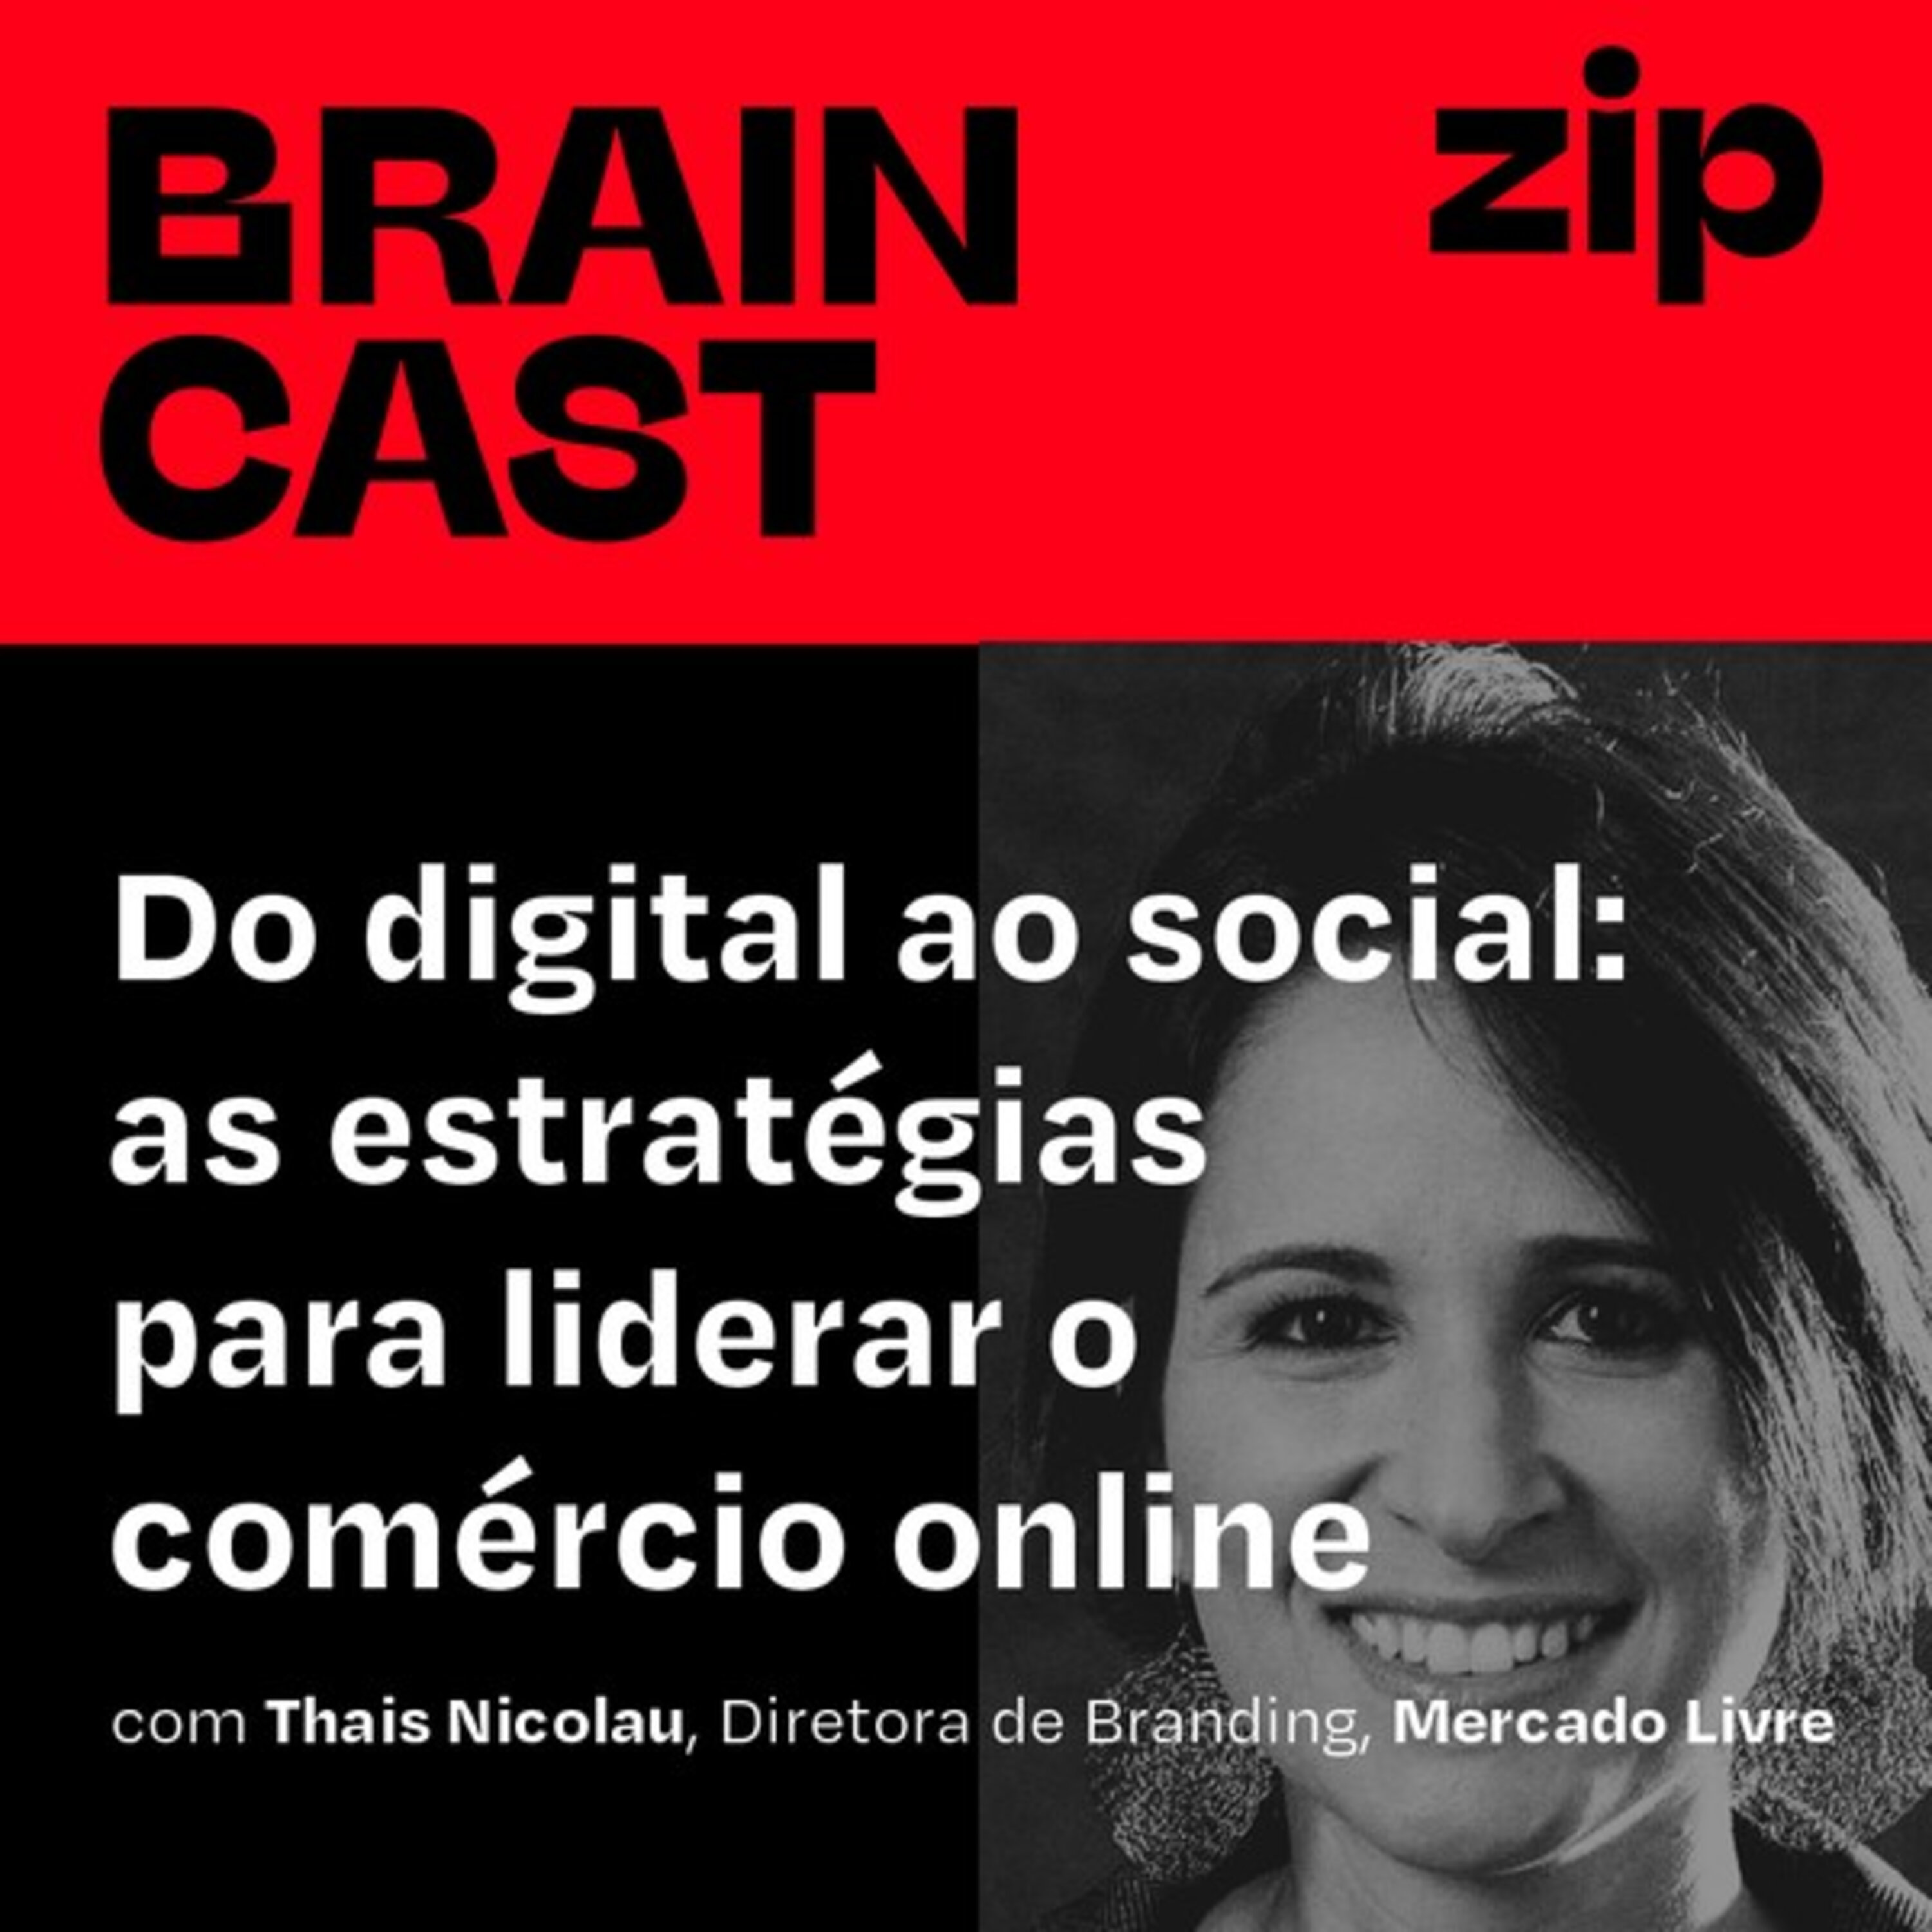 [zip] Do digital ao social: as estratégias do Mercado Livre para liderar o comércio online